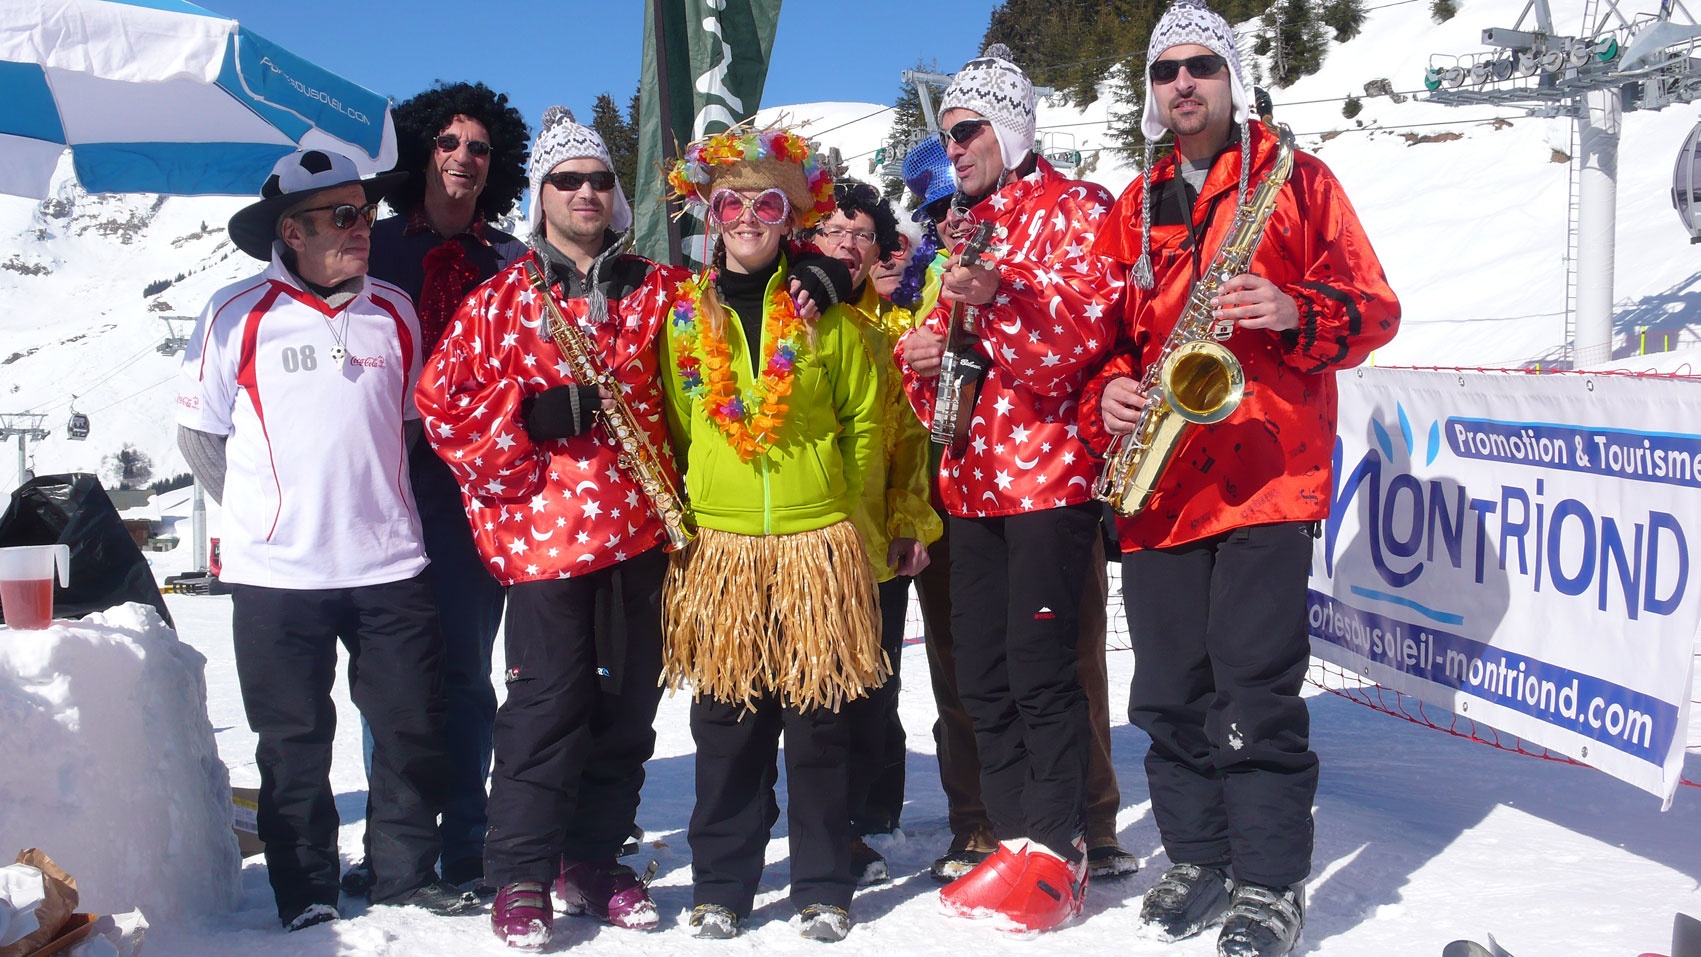 Jazz Band à Ski - animation musicale en station de ski pendant le carnaval, Mardi gras, les vacances de février